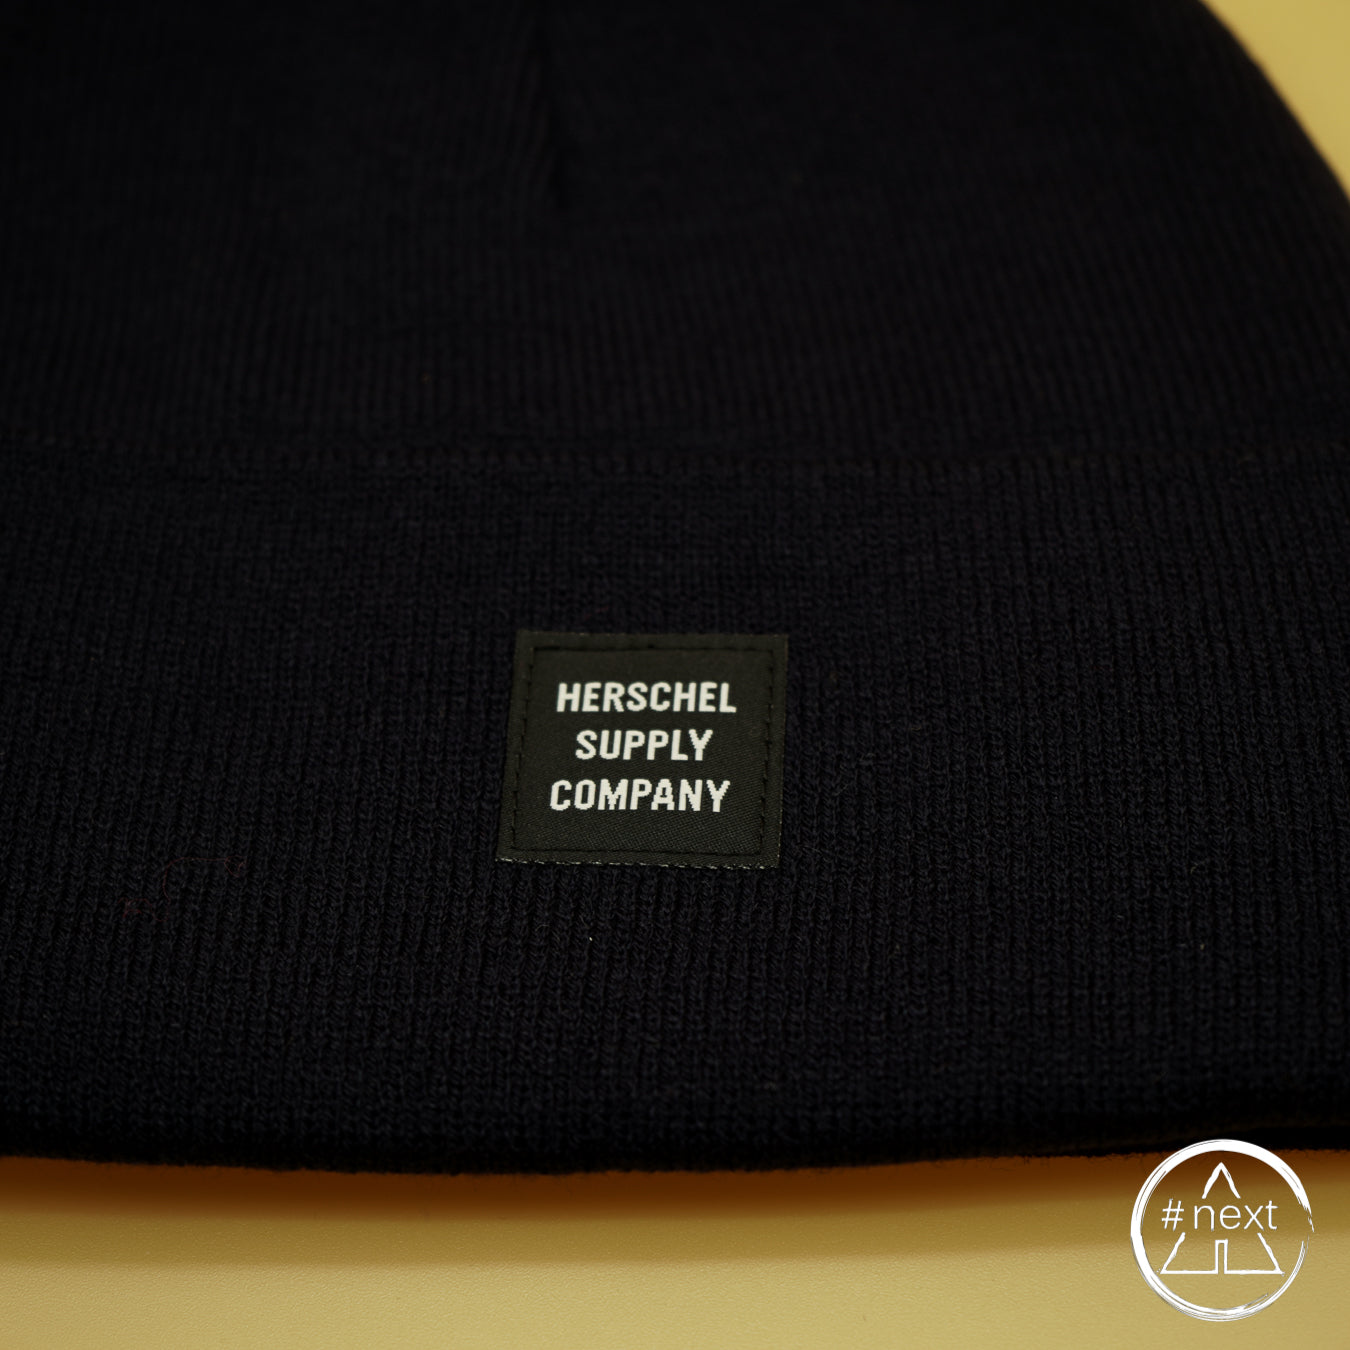 Herschel Supply Co. - Cuffia ABBOTT - Black. - ANDY #NEXT